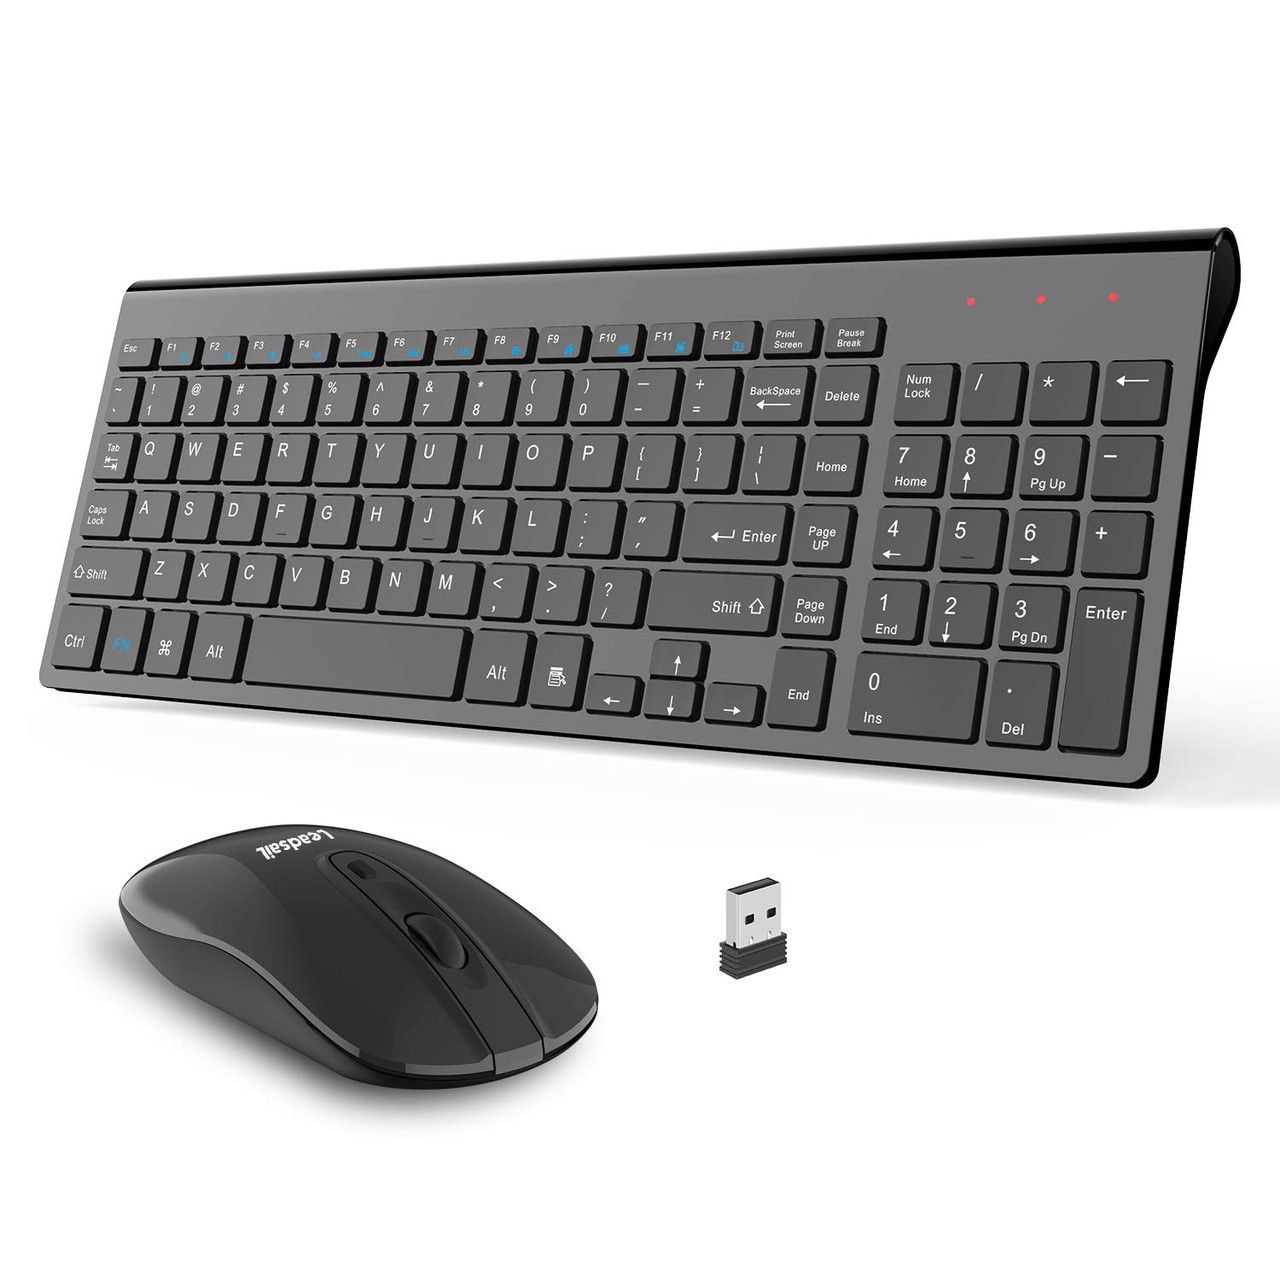 Комбінована бездротова клавіатура та миша